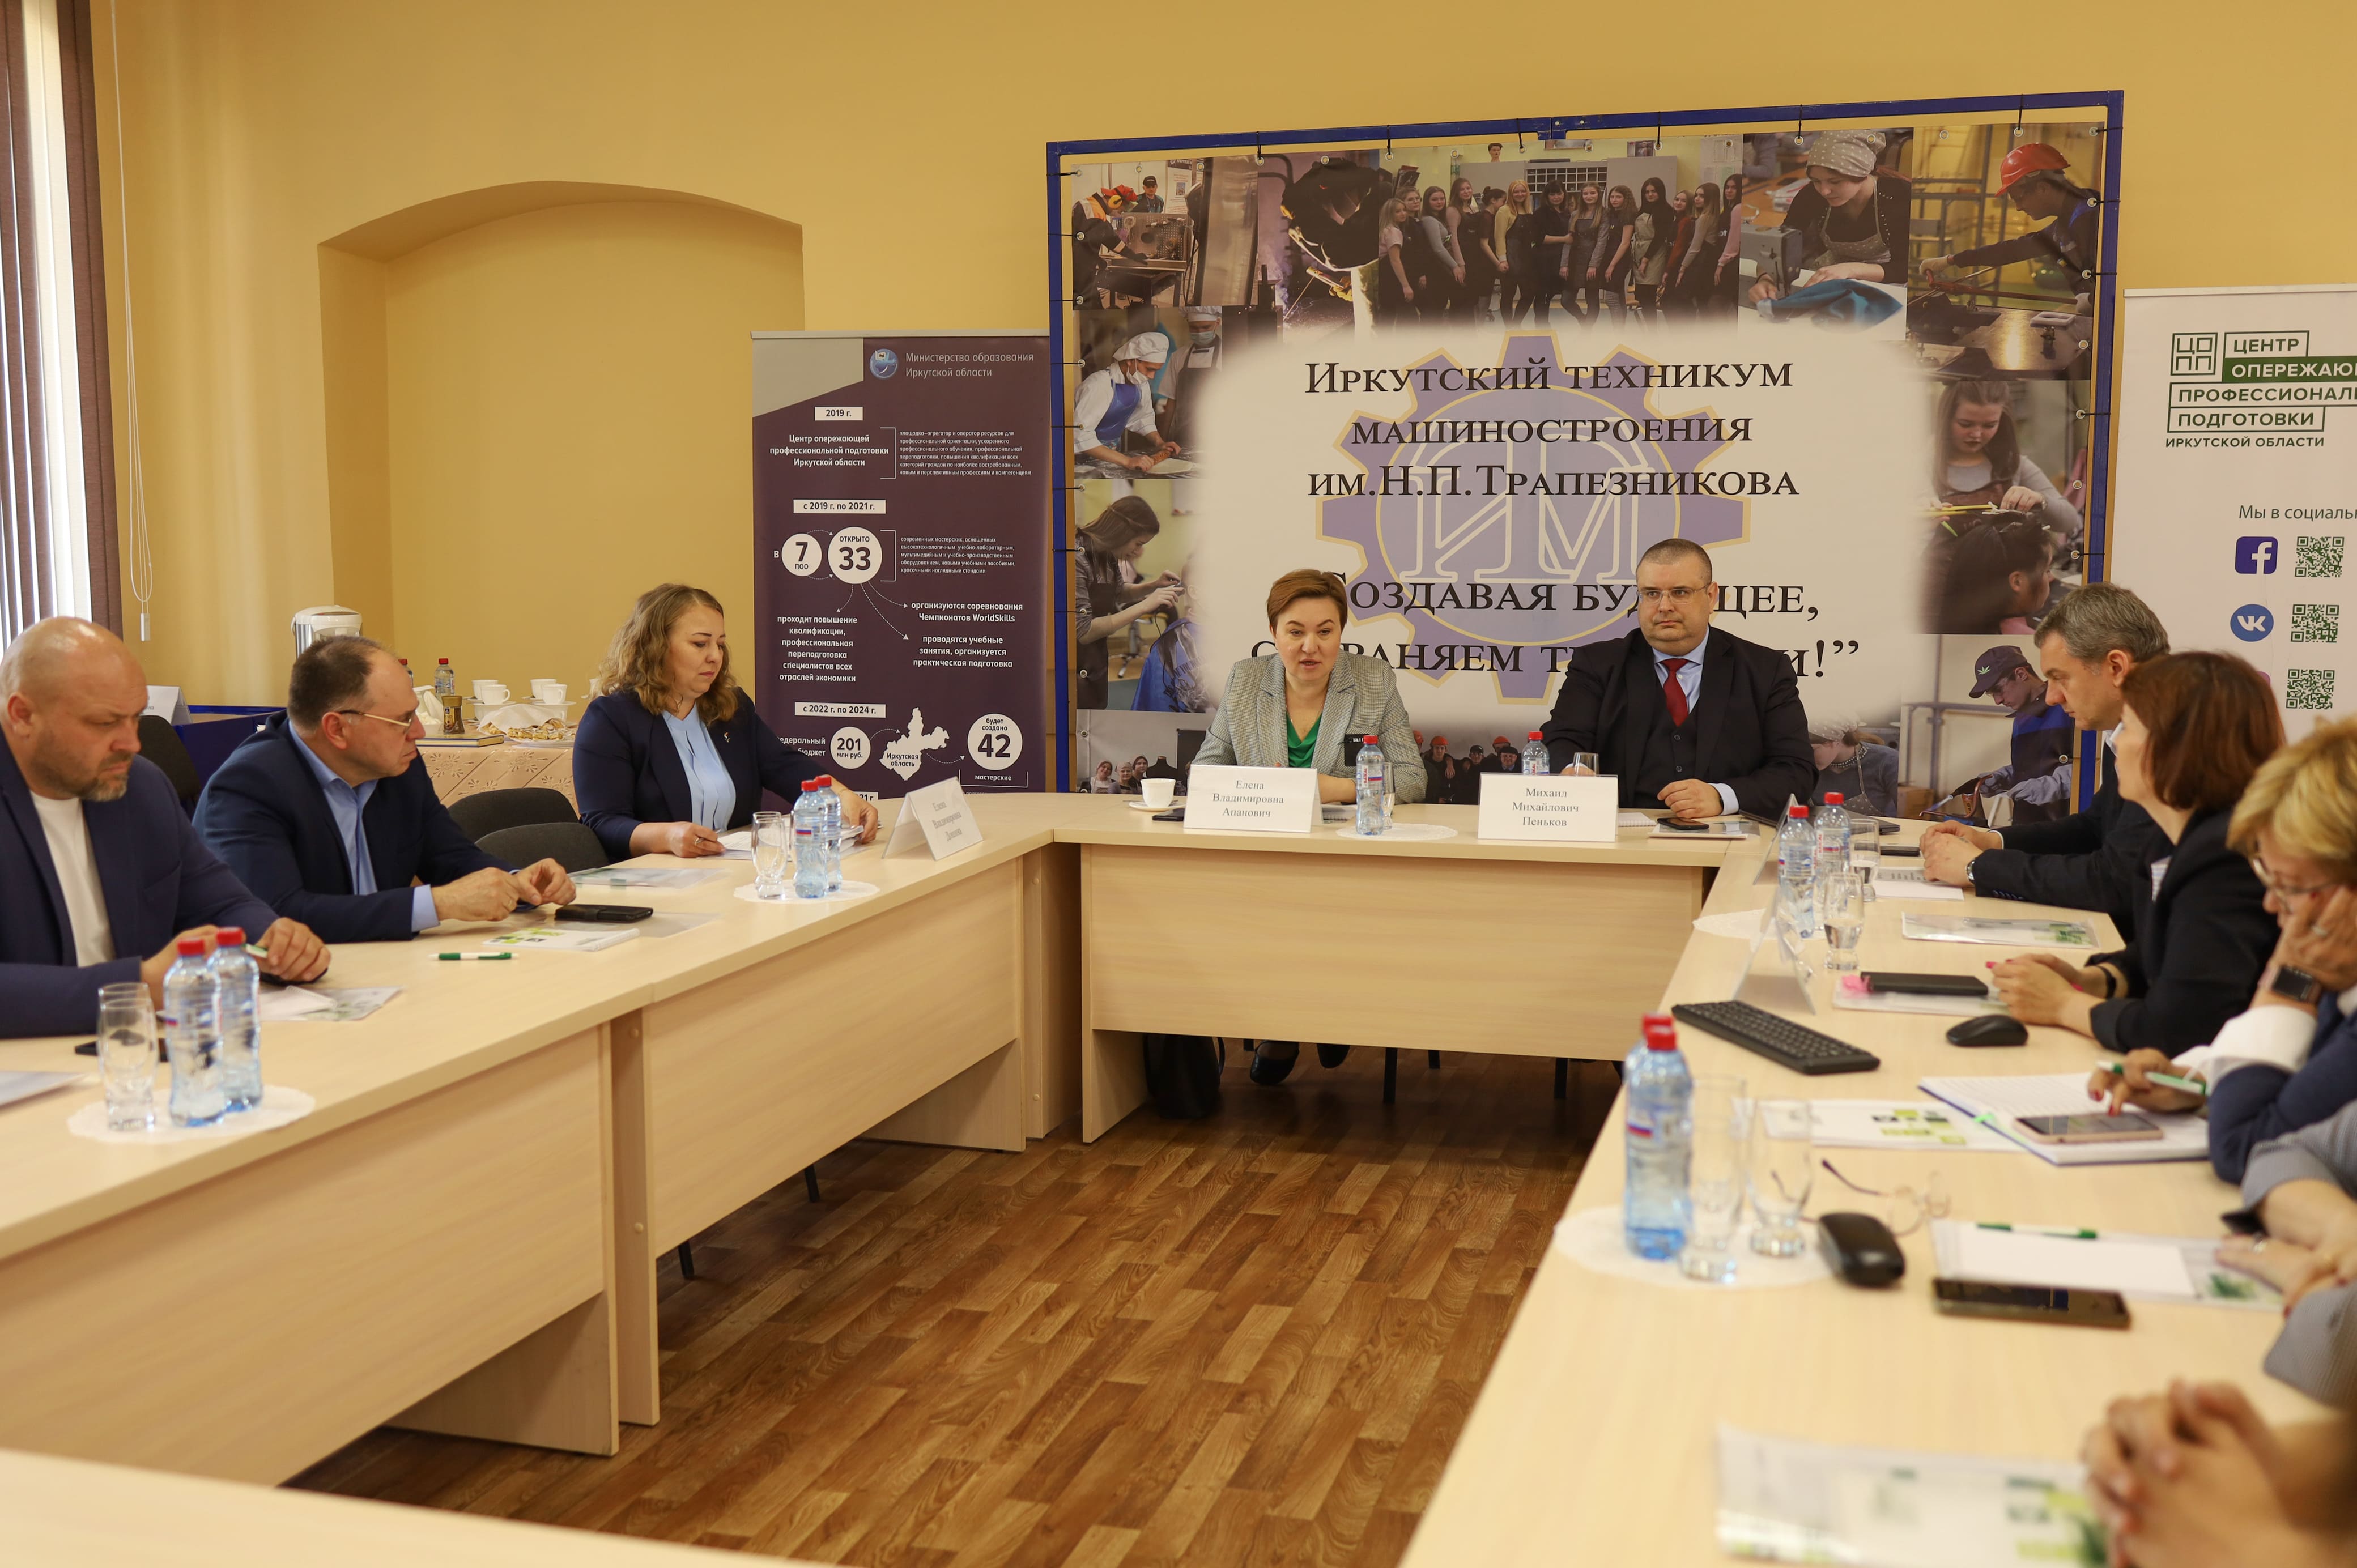 ЦОПП Иркутской области организовал встречу представителей АО "ГАЗСТРОЙПРОМ" с дирекцией и обучающимися ПОО региона.